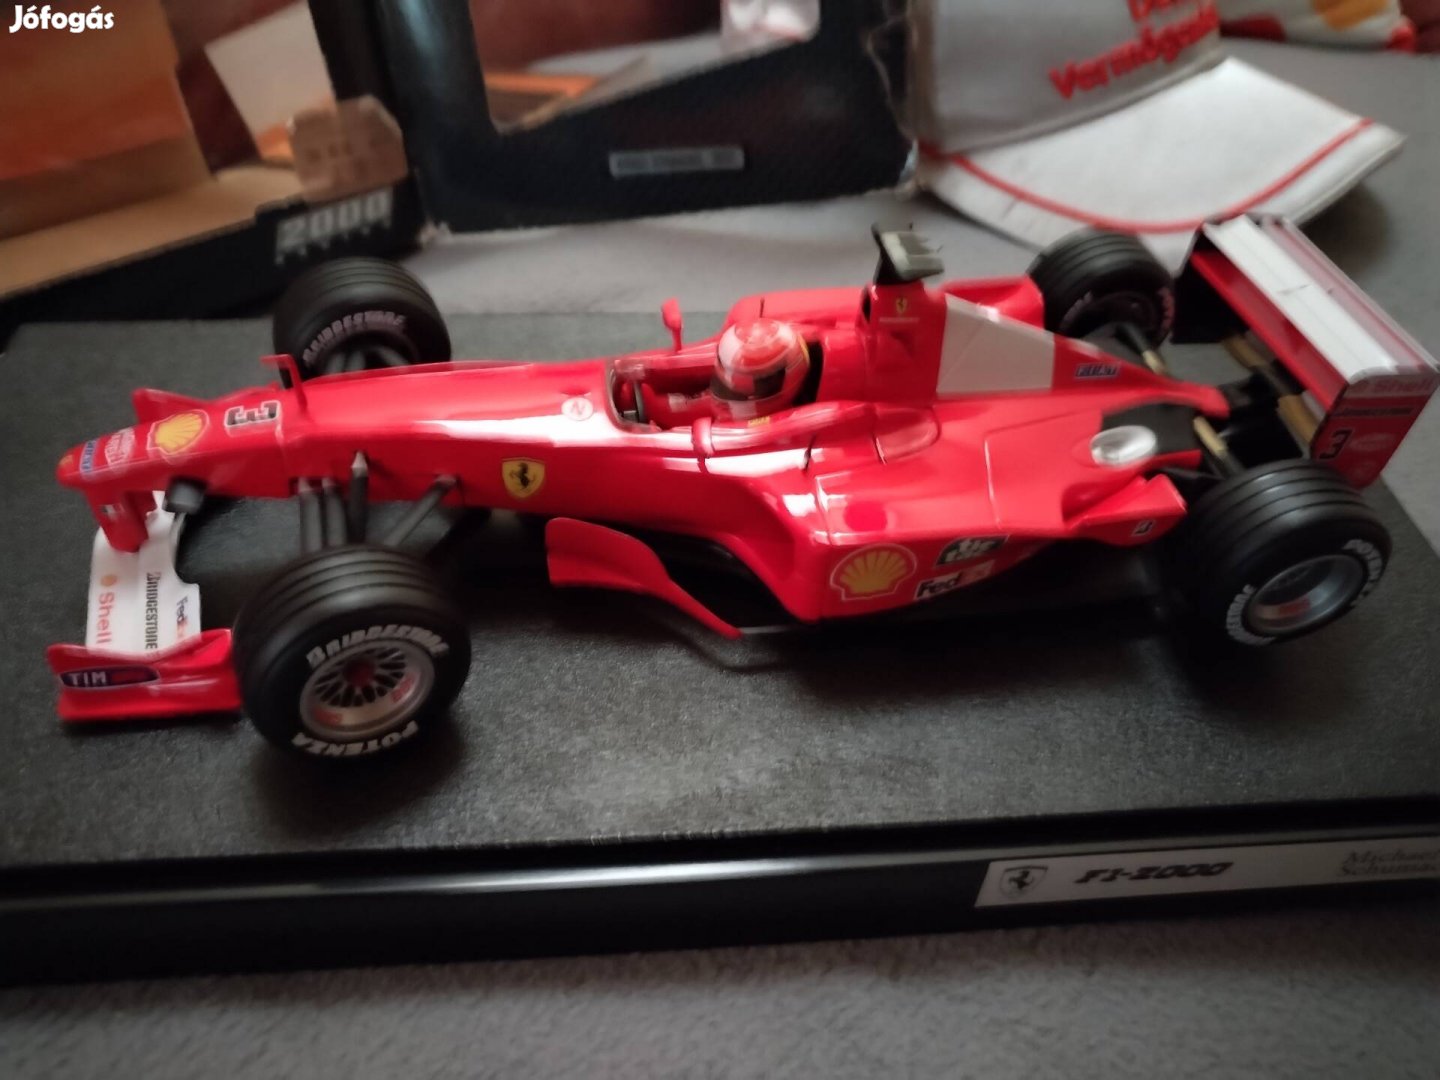 F1 Michael Schumacher modell sapkával + ajándék